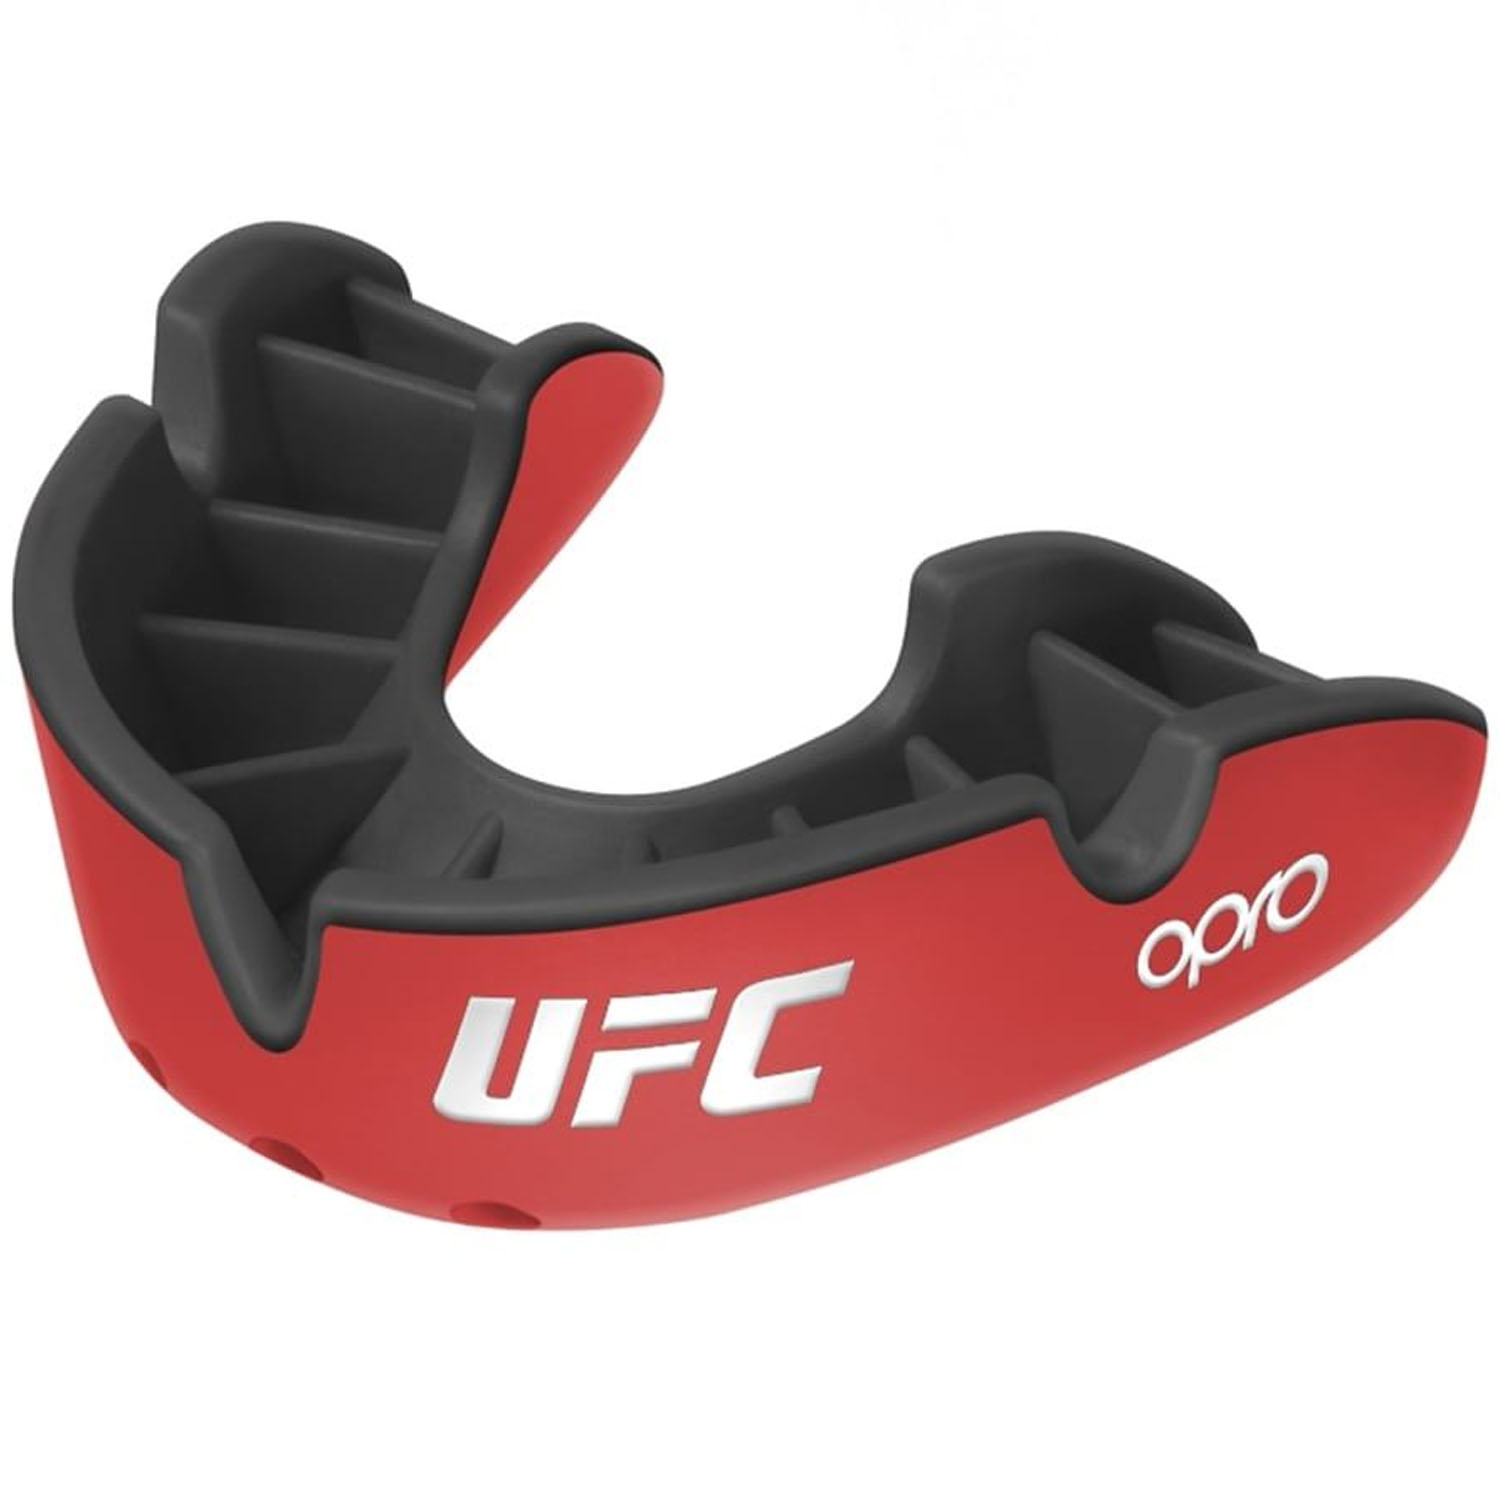 OPRO Mundschutz, Silver 2022, UFC, rot-schwarz